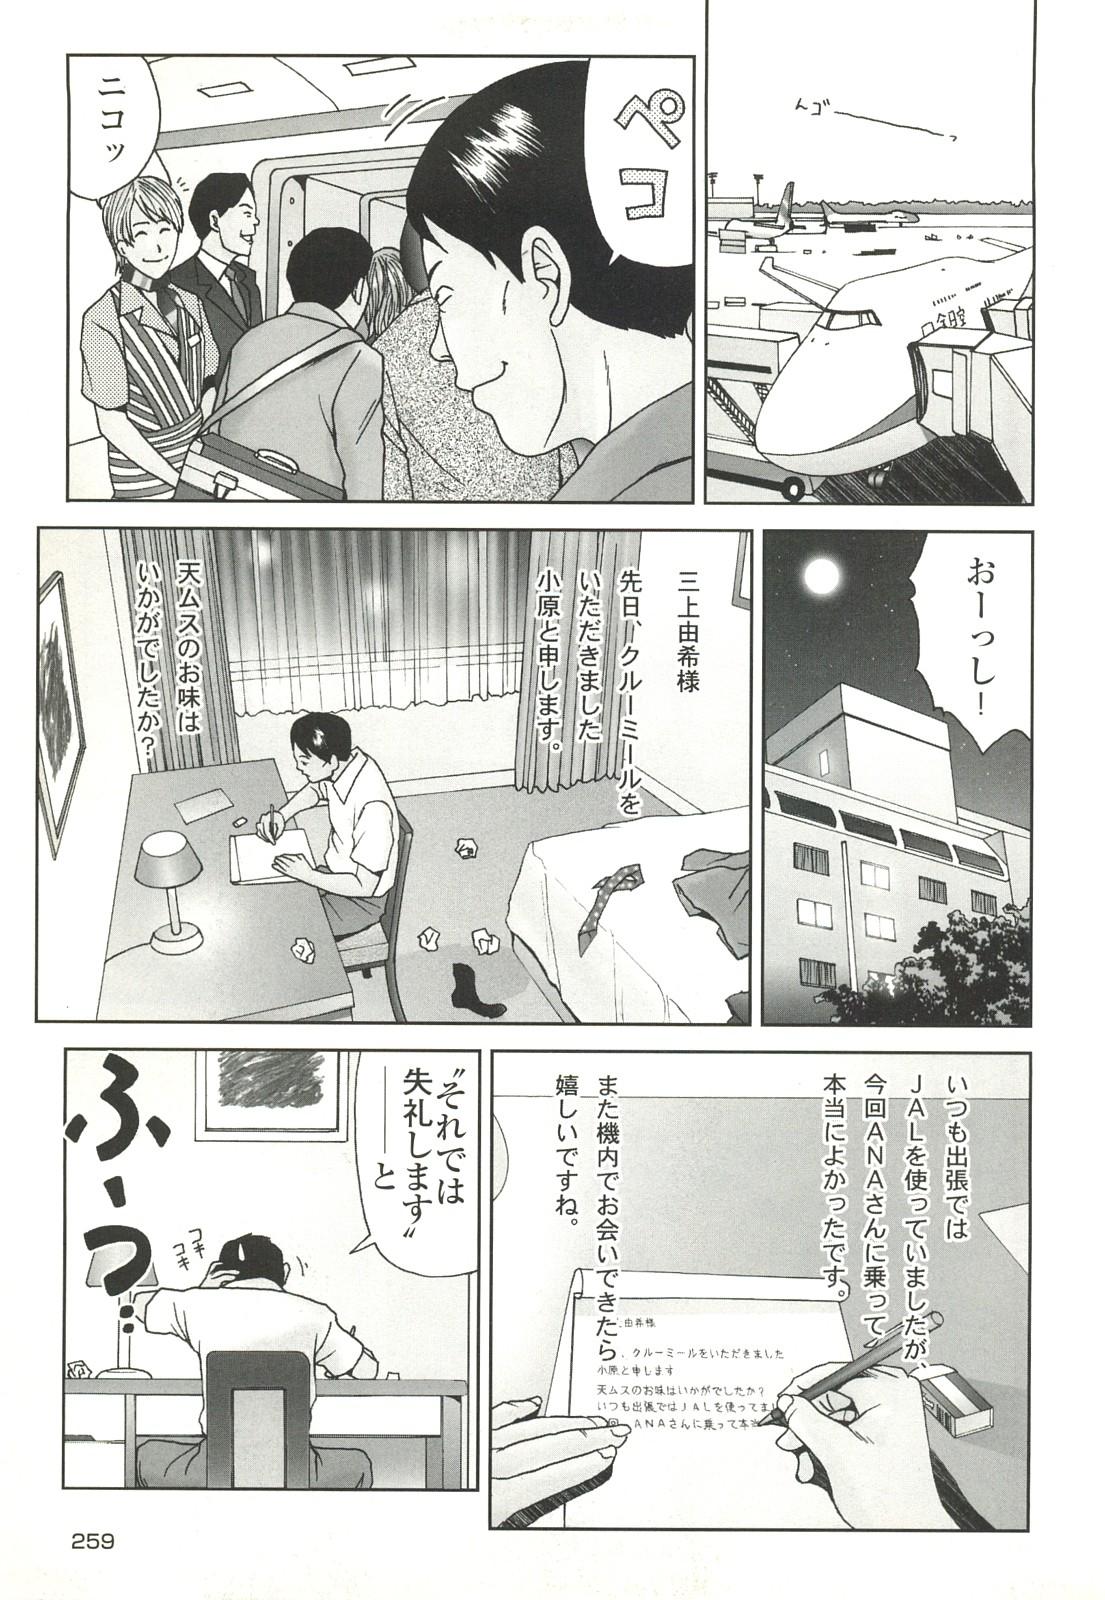 コミック裏モノJAPAN Vol.18 今井のりたつスペシャル号 258